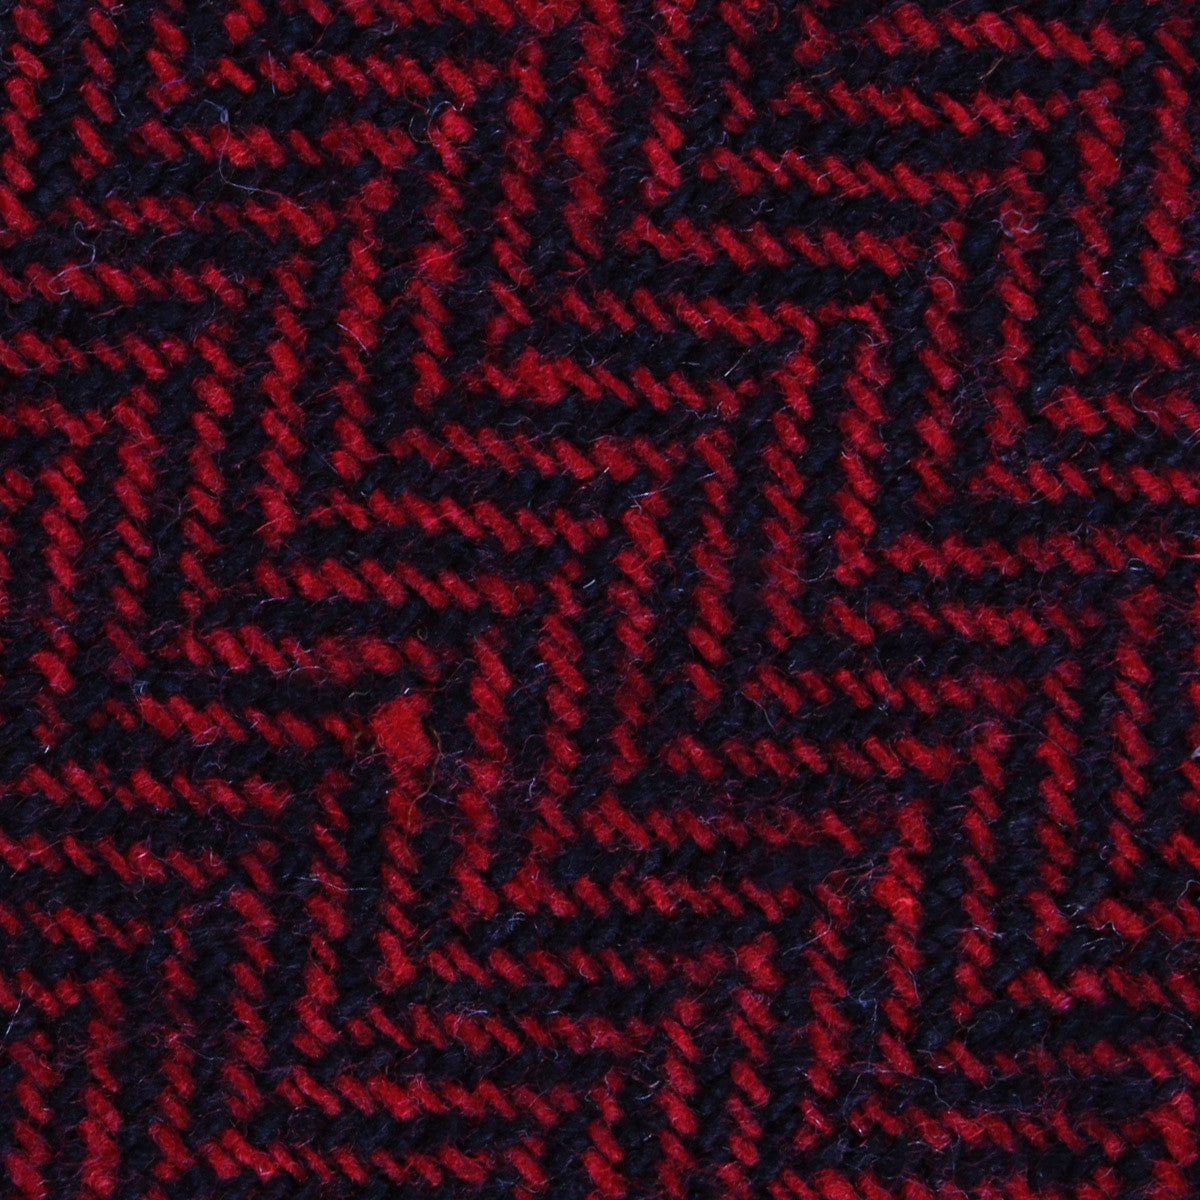 Black & Red Herringbone Wool Fabric Skinny Tie